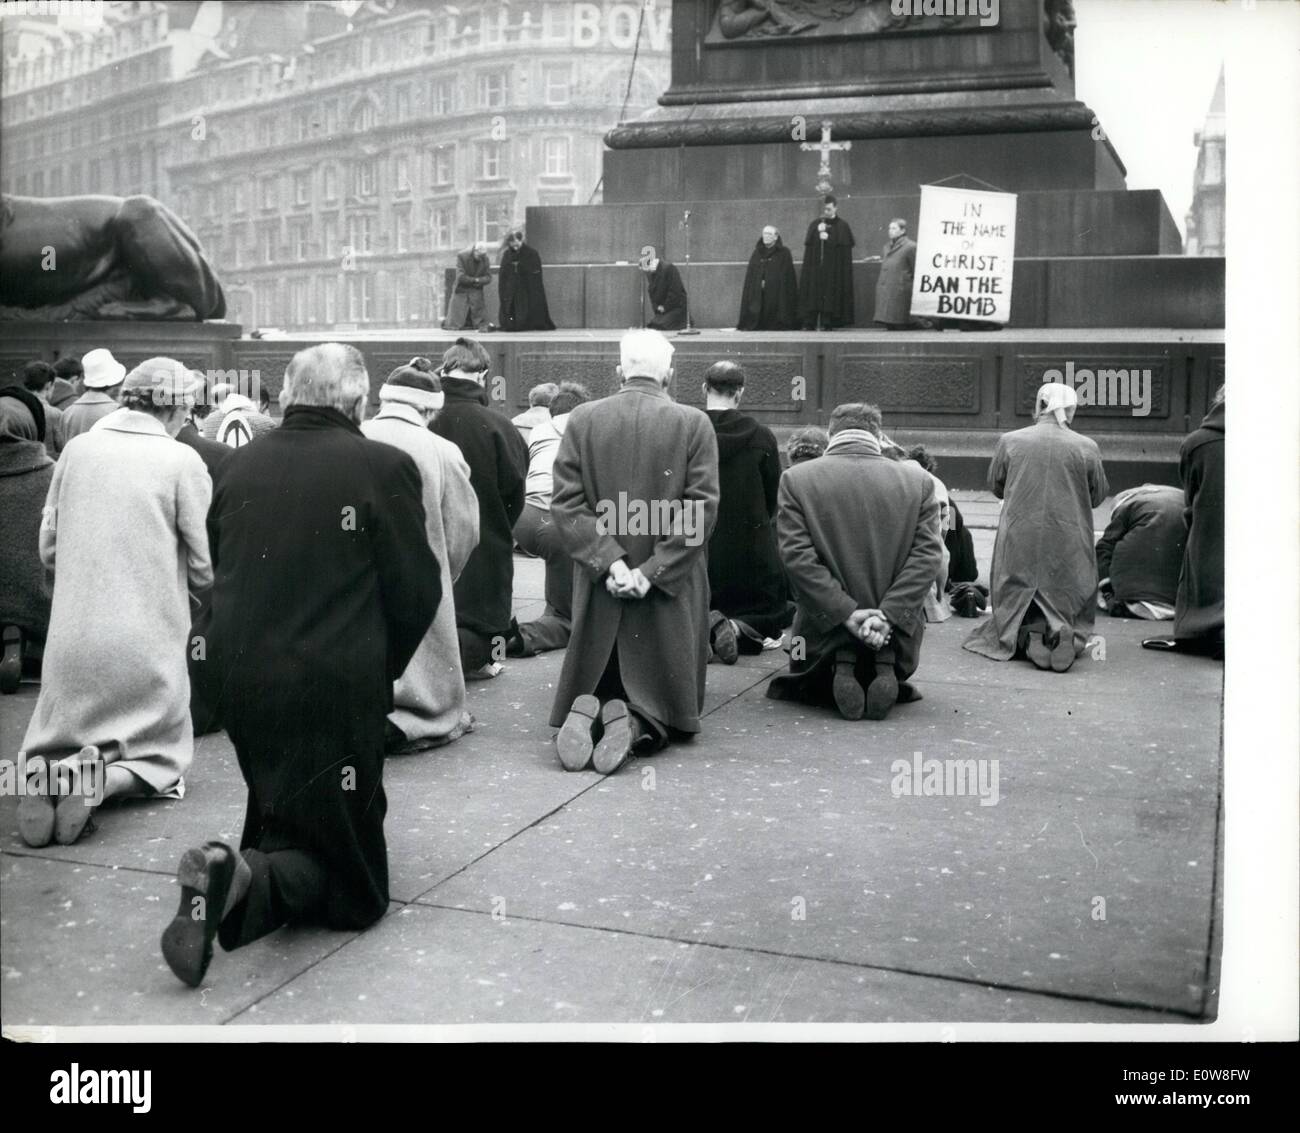 Nov 11, 1961 - Arrodillarse'' ban-la-bomba-protesta: Una nueva forma de prohibir la protesta con bombas ocurrido en Trafalgar Square ayer. Los manifestantes se arrodilló en una vigilia de protesta silenciosa. La manifestación fue encabezada por el reverendo Denis Shaw, un cura anglicano en Bethnal Green, Londres, a la que asistieron 200 seguidores. Se desplegó una pancarta que dice ''En el nombre de Cristo, Ben la bomba''. Más tarde 30 de los manifestantes se celebró una vigilia de 19 horas en silencio sobre los pasos de San Martins en los campos. La foto muestra los manifestantes Anti-Bomb arrodillarse en Trafalgar Square ayer. Foto de stock